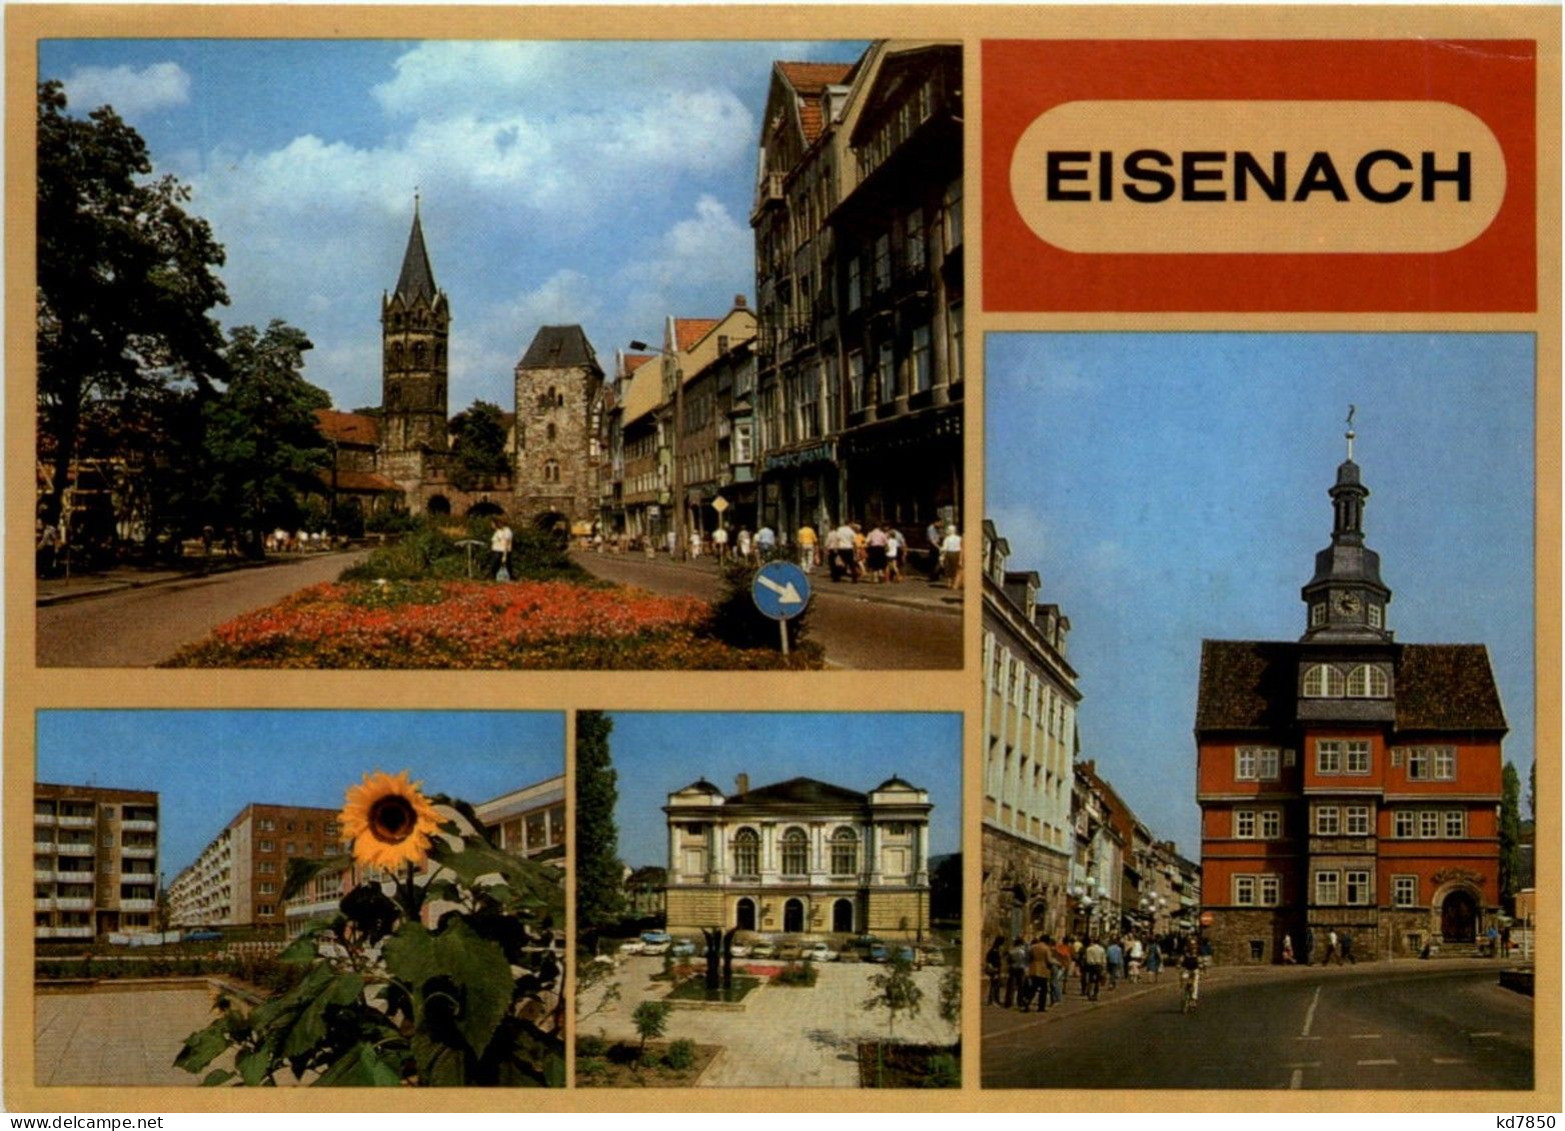 Eisenach - Eisenach